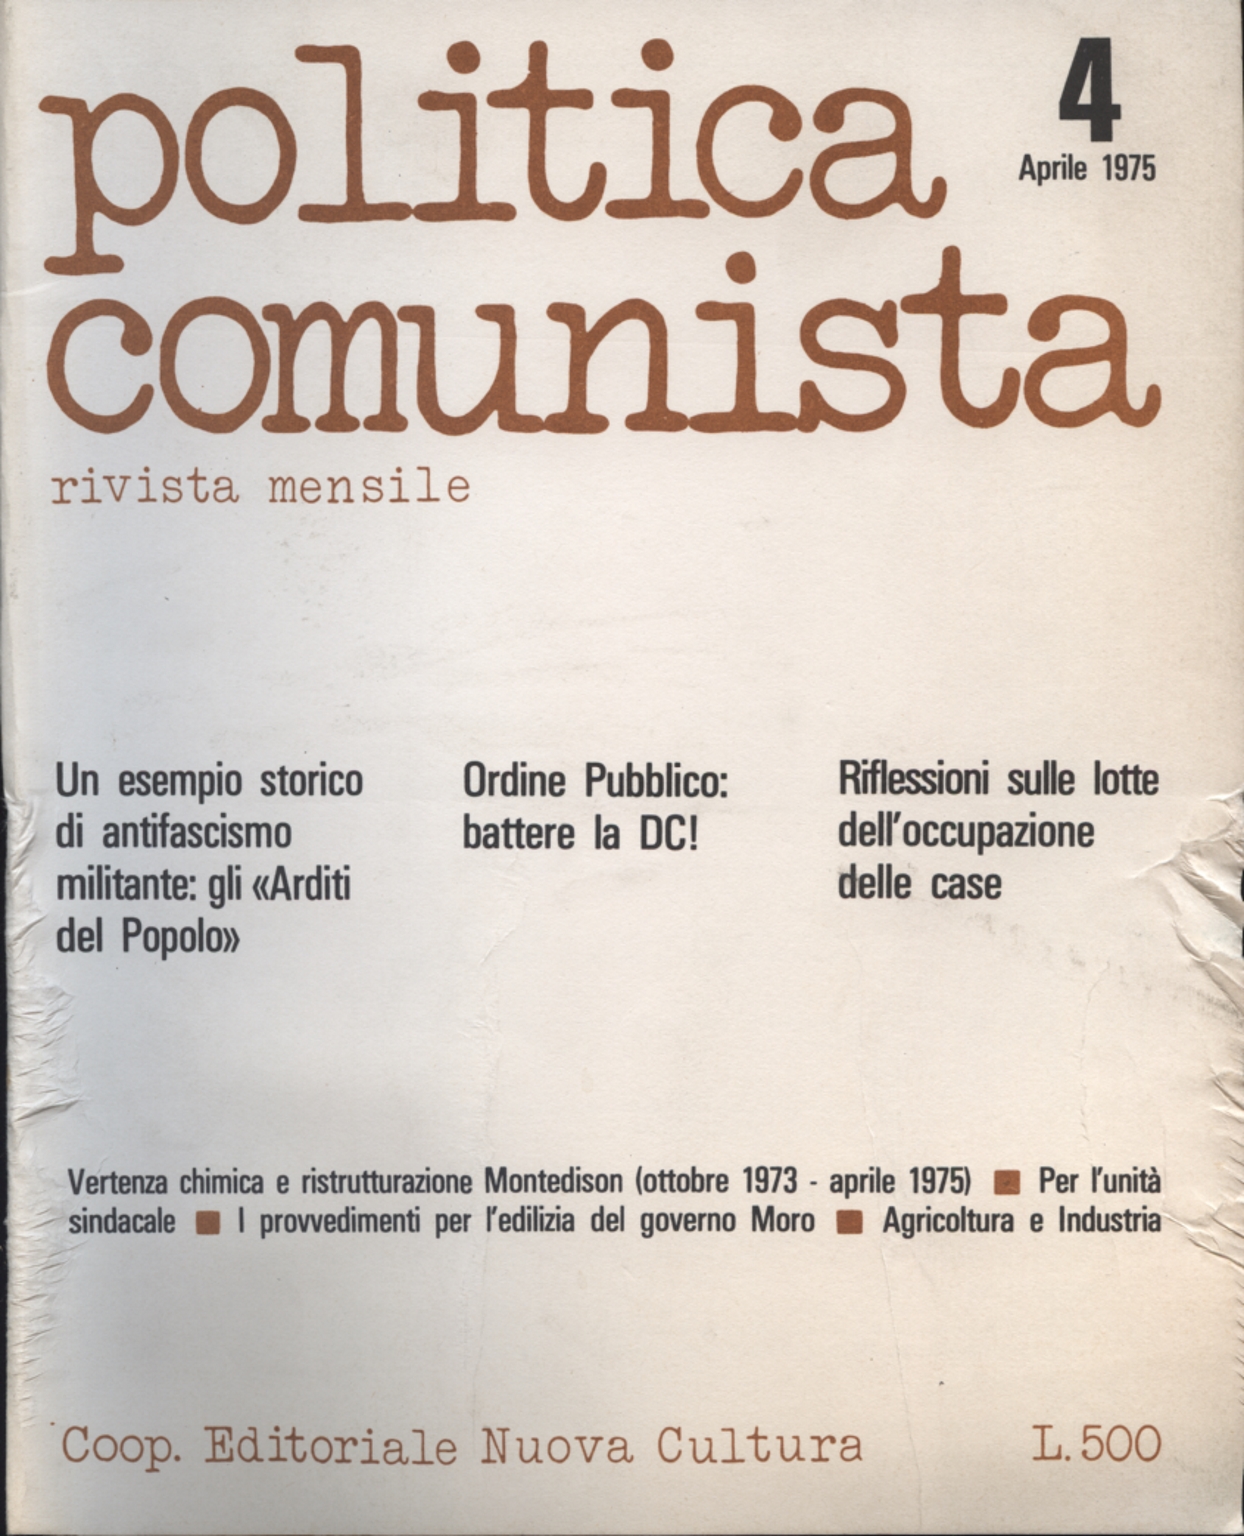 Les politiques communistes n'.Le 4 avril 1975, AA.VV.